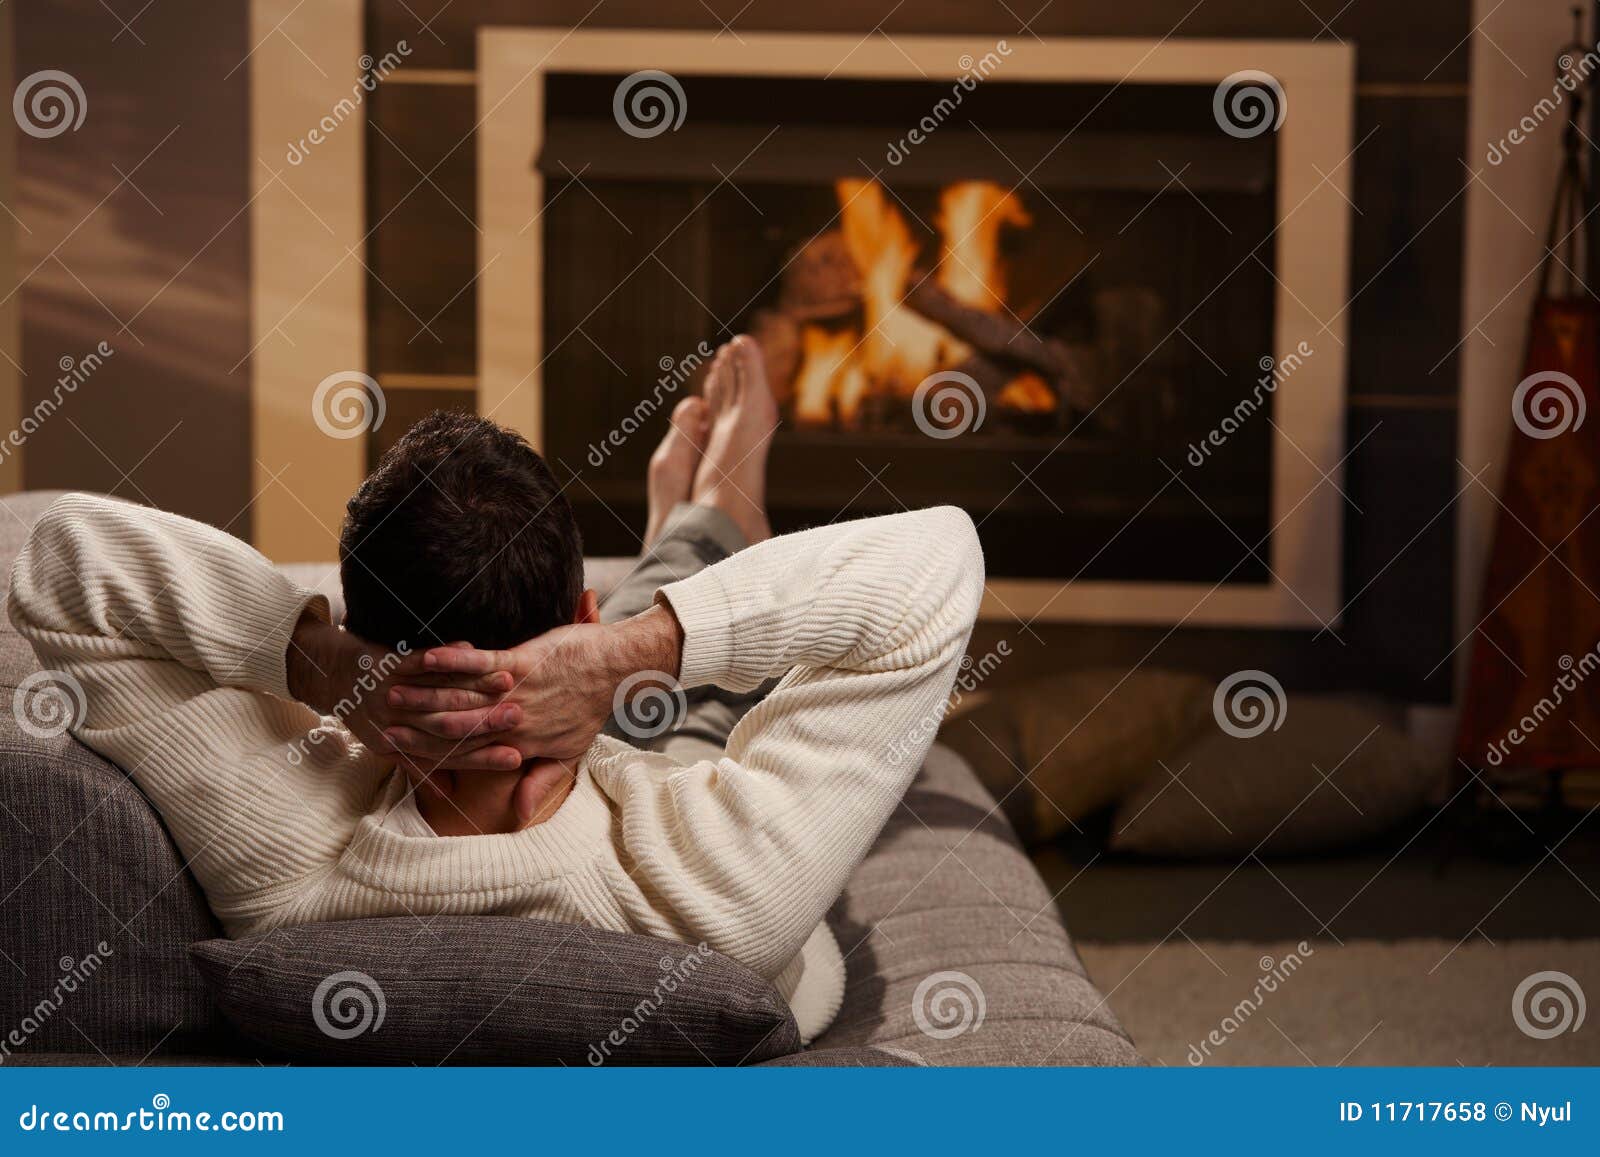 Expresa tu momento " in situ " con una imagen - Página 6 Man-sitting-fireplace-11717658